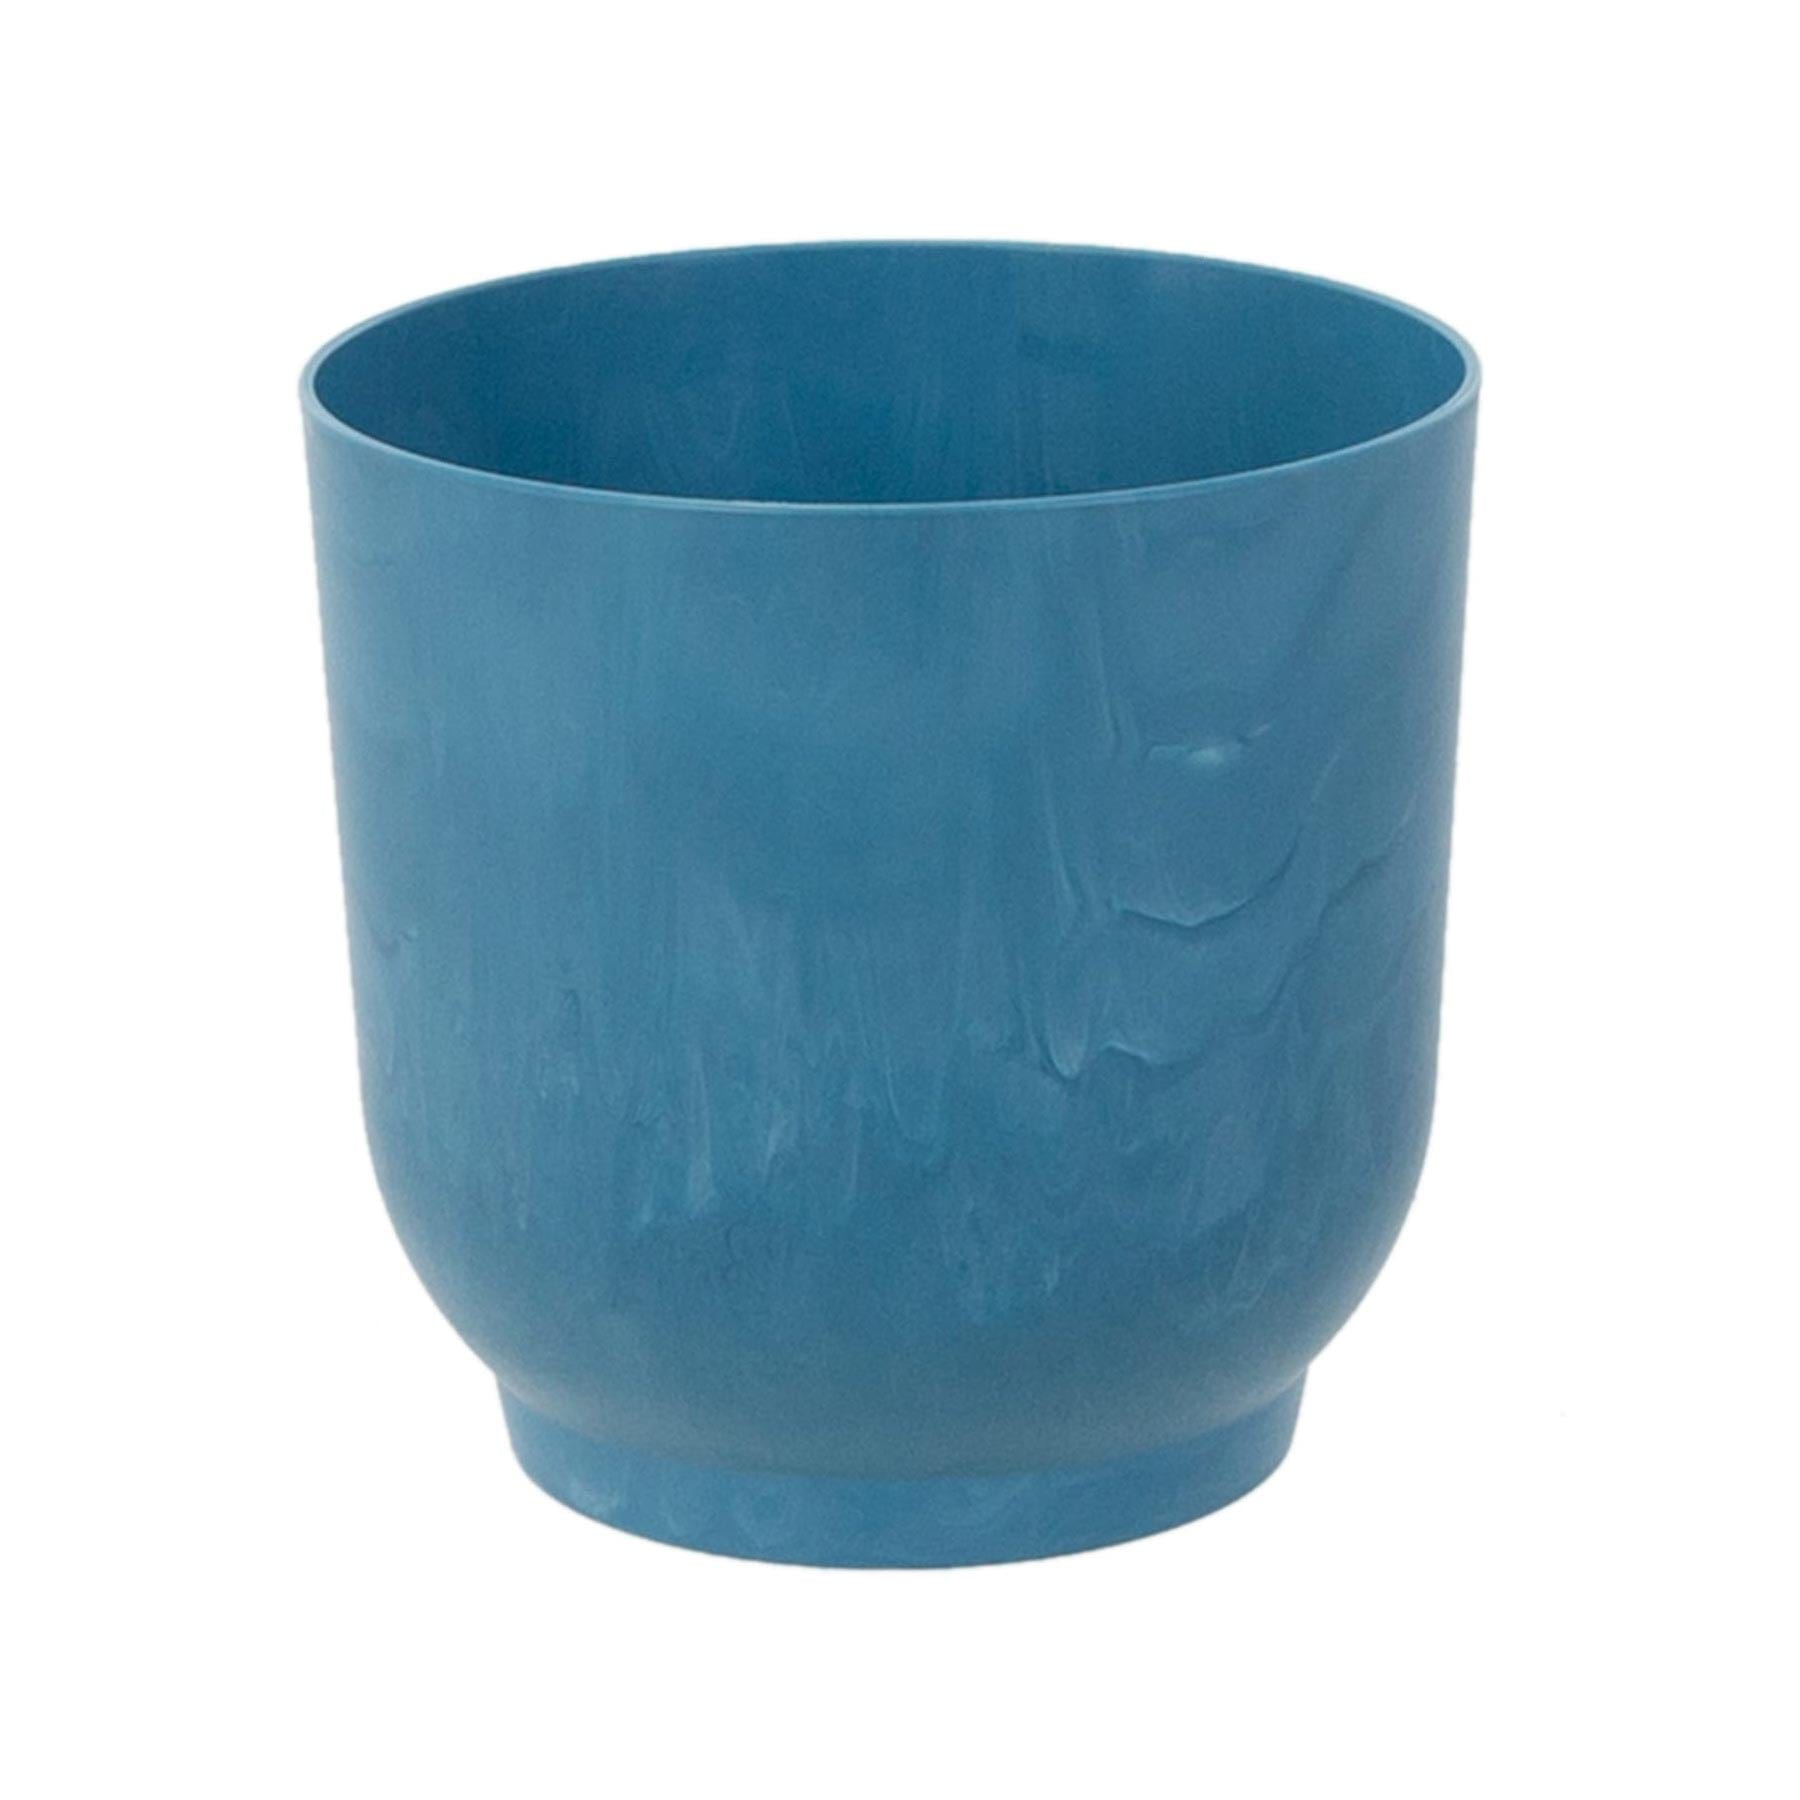 Ecomade pot light blue ocean 18.5cm